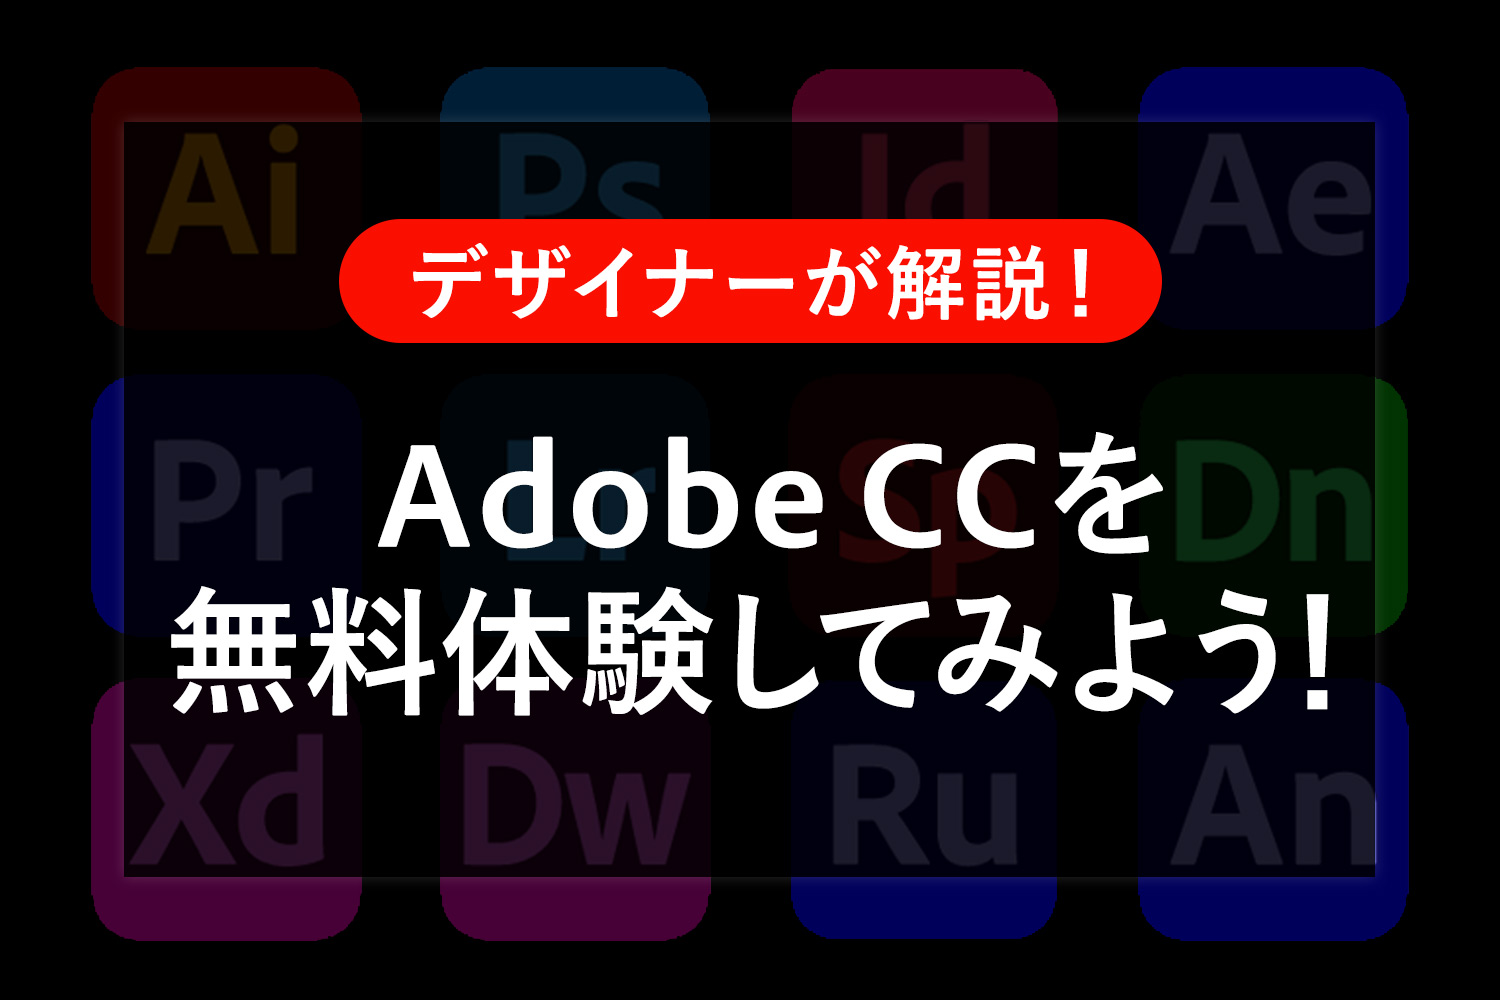 Adobe CCを無料体験してみよう！ダウンロードから解約まで注意点も解説します